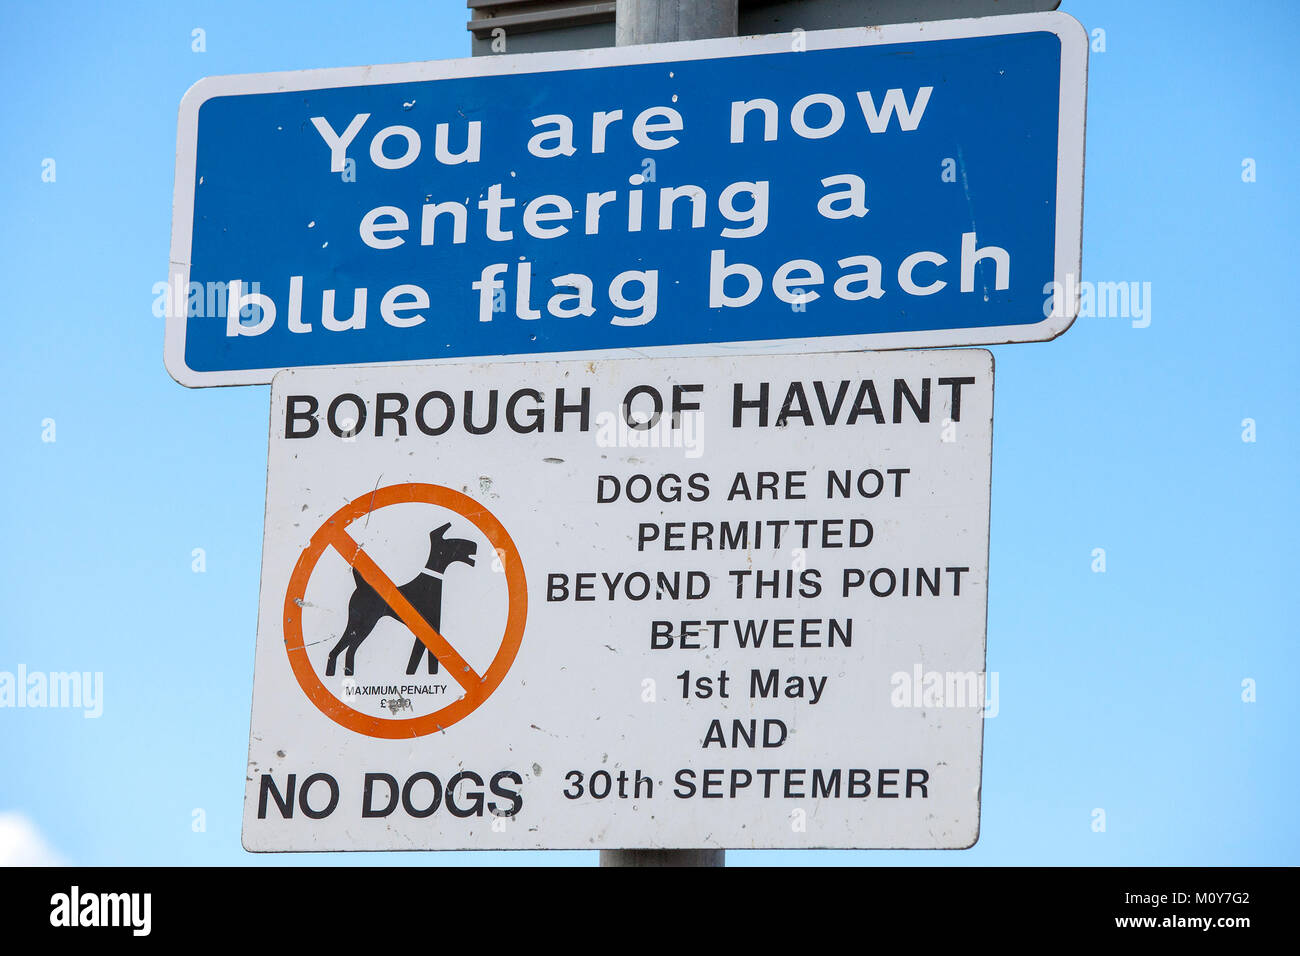 Vous êtes maintenant dans une plage drapeau bleu signe et les chiens ne sont pas autorisés au-delà de ce point entre le 1er mai et 30 septembre Pas de chien avis Banque D'Images